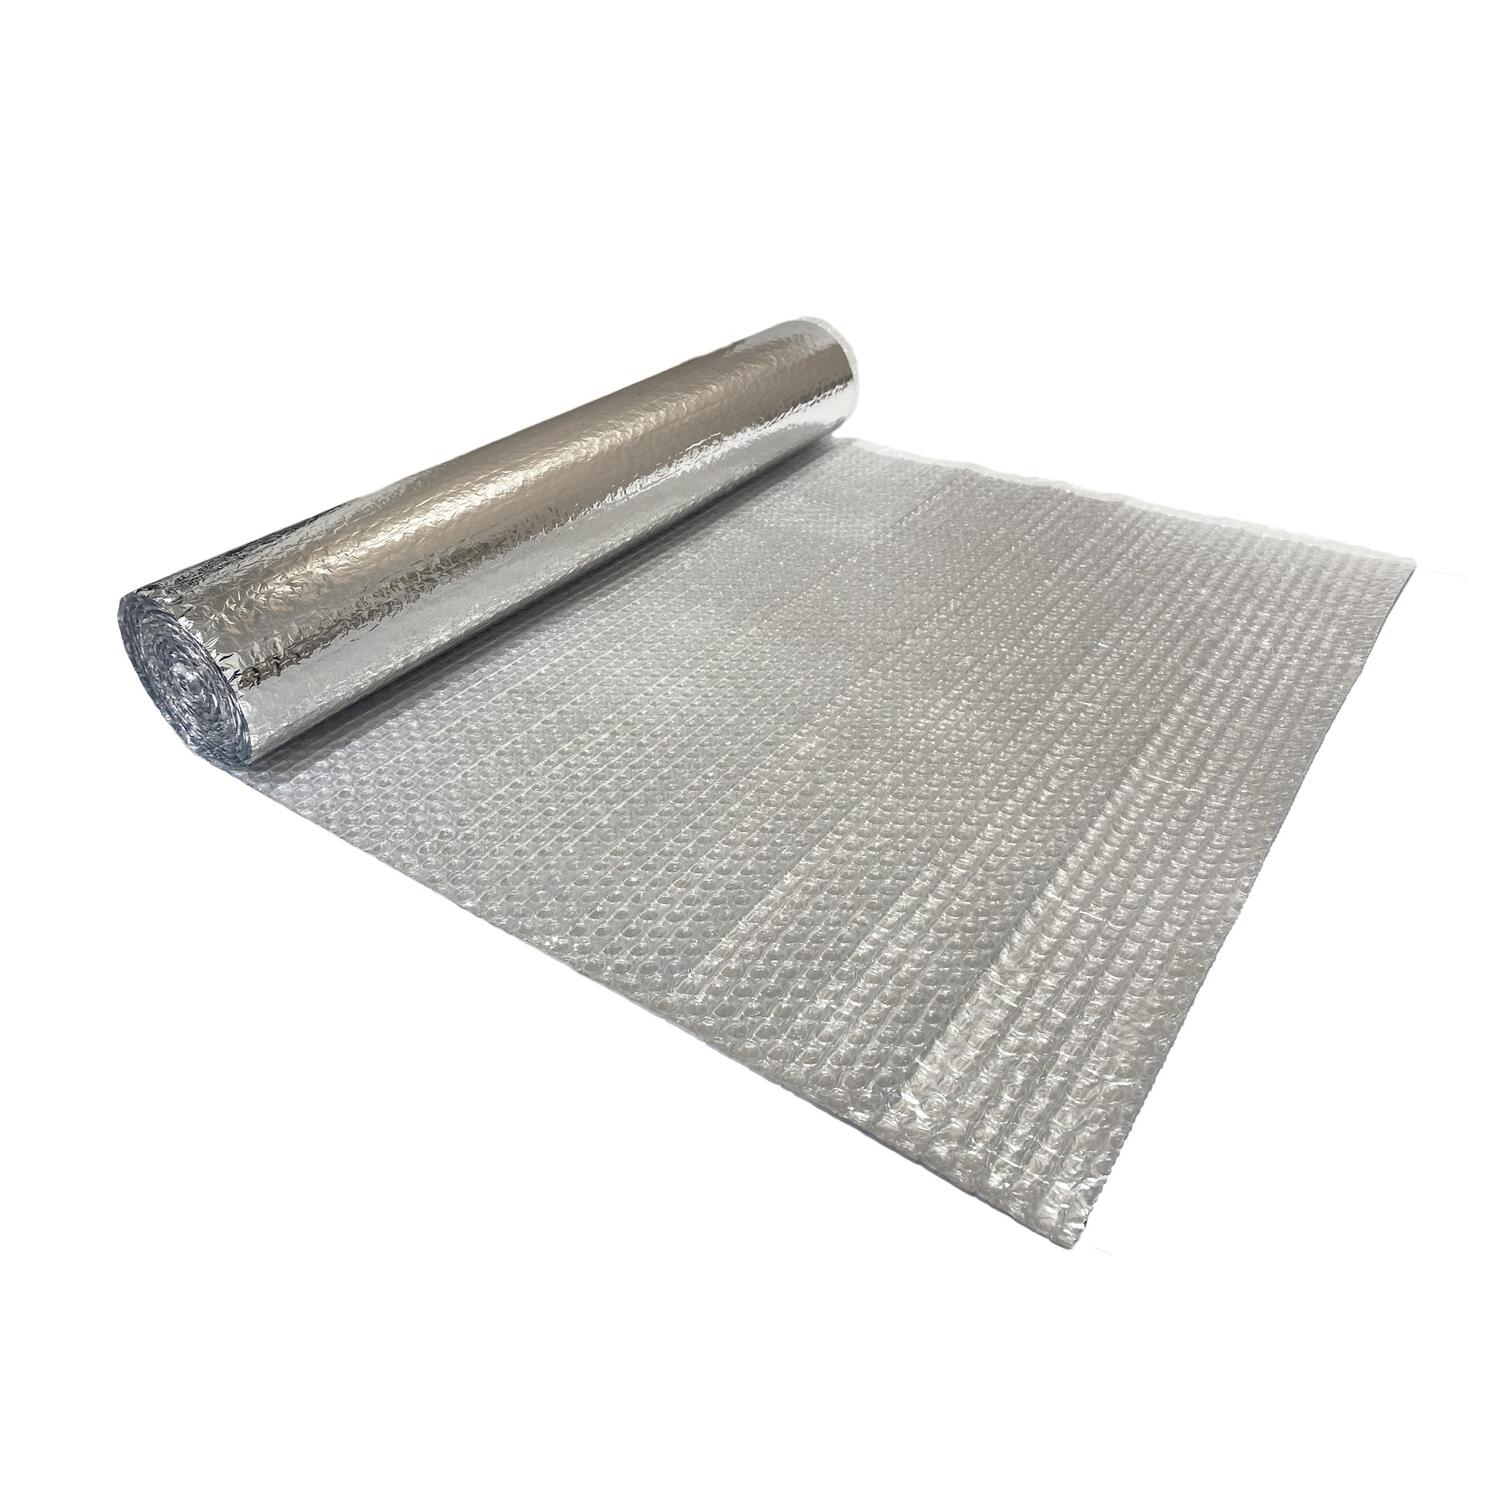 NoppiMax Aluminium Noppenfolie 60 x 500 cm Dampfdicht Isoliermaterial,  Luftpolster- und Aluminiumfolienschicht